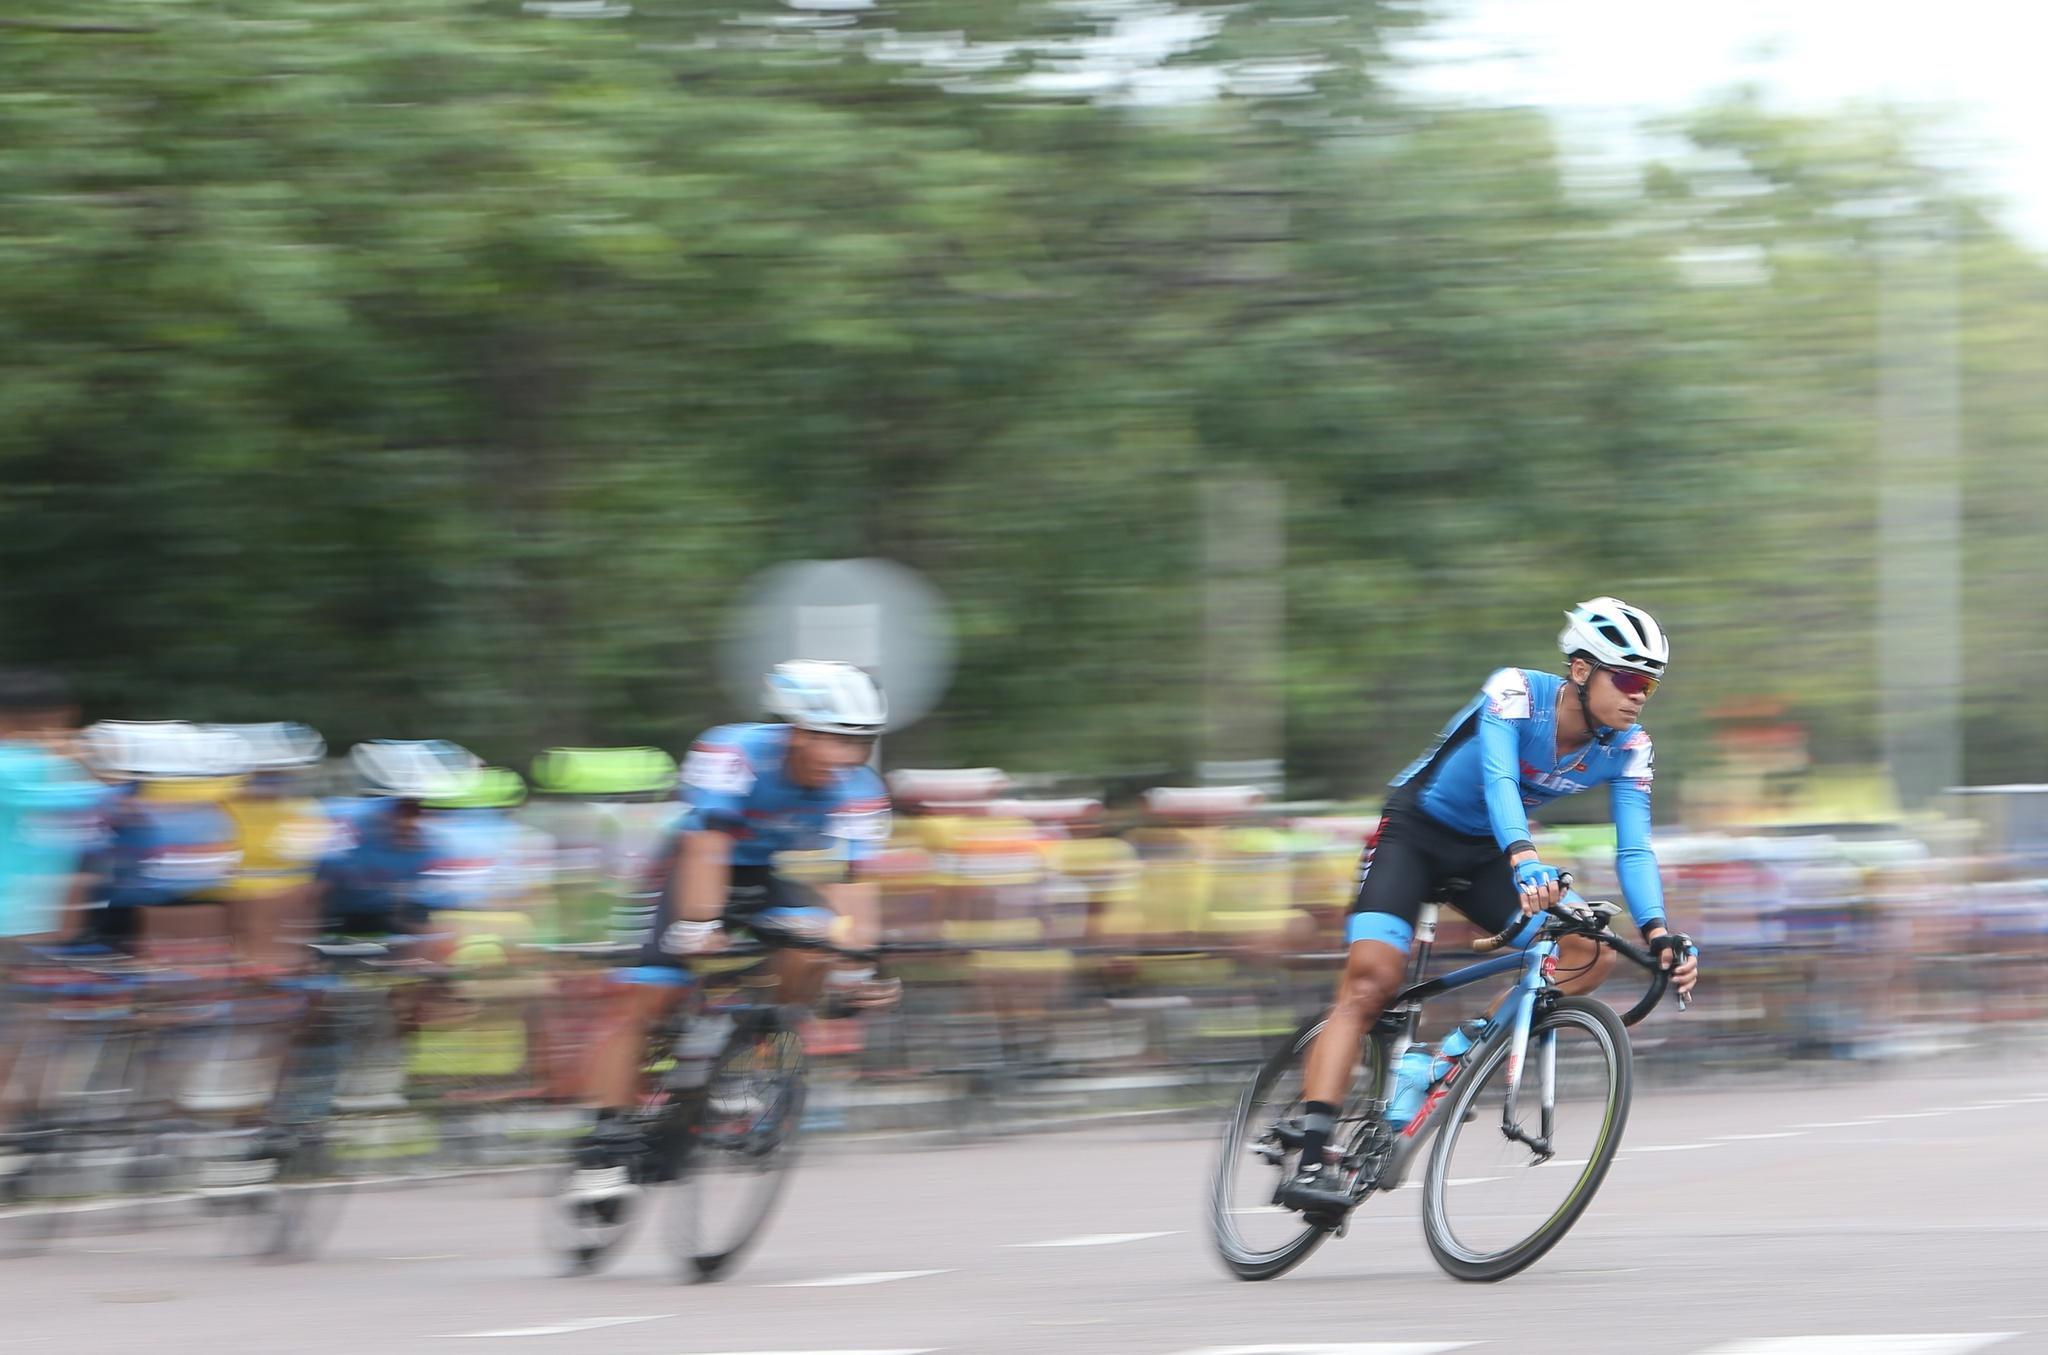 Chặng cuối giải xe đạp VTV kết thúc tốt đẹp tại Bình Định - ảnh 9